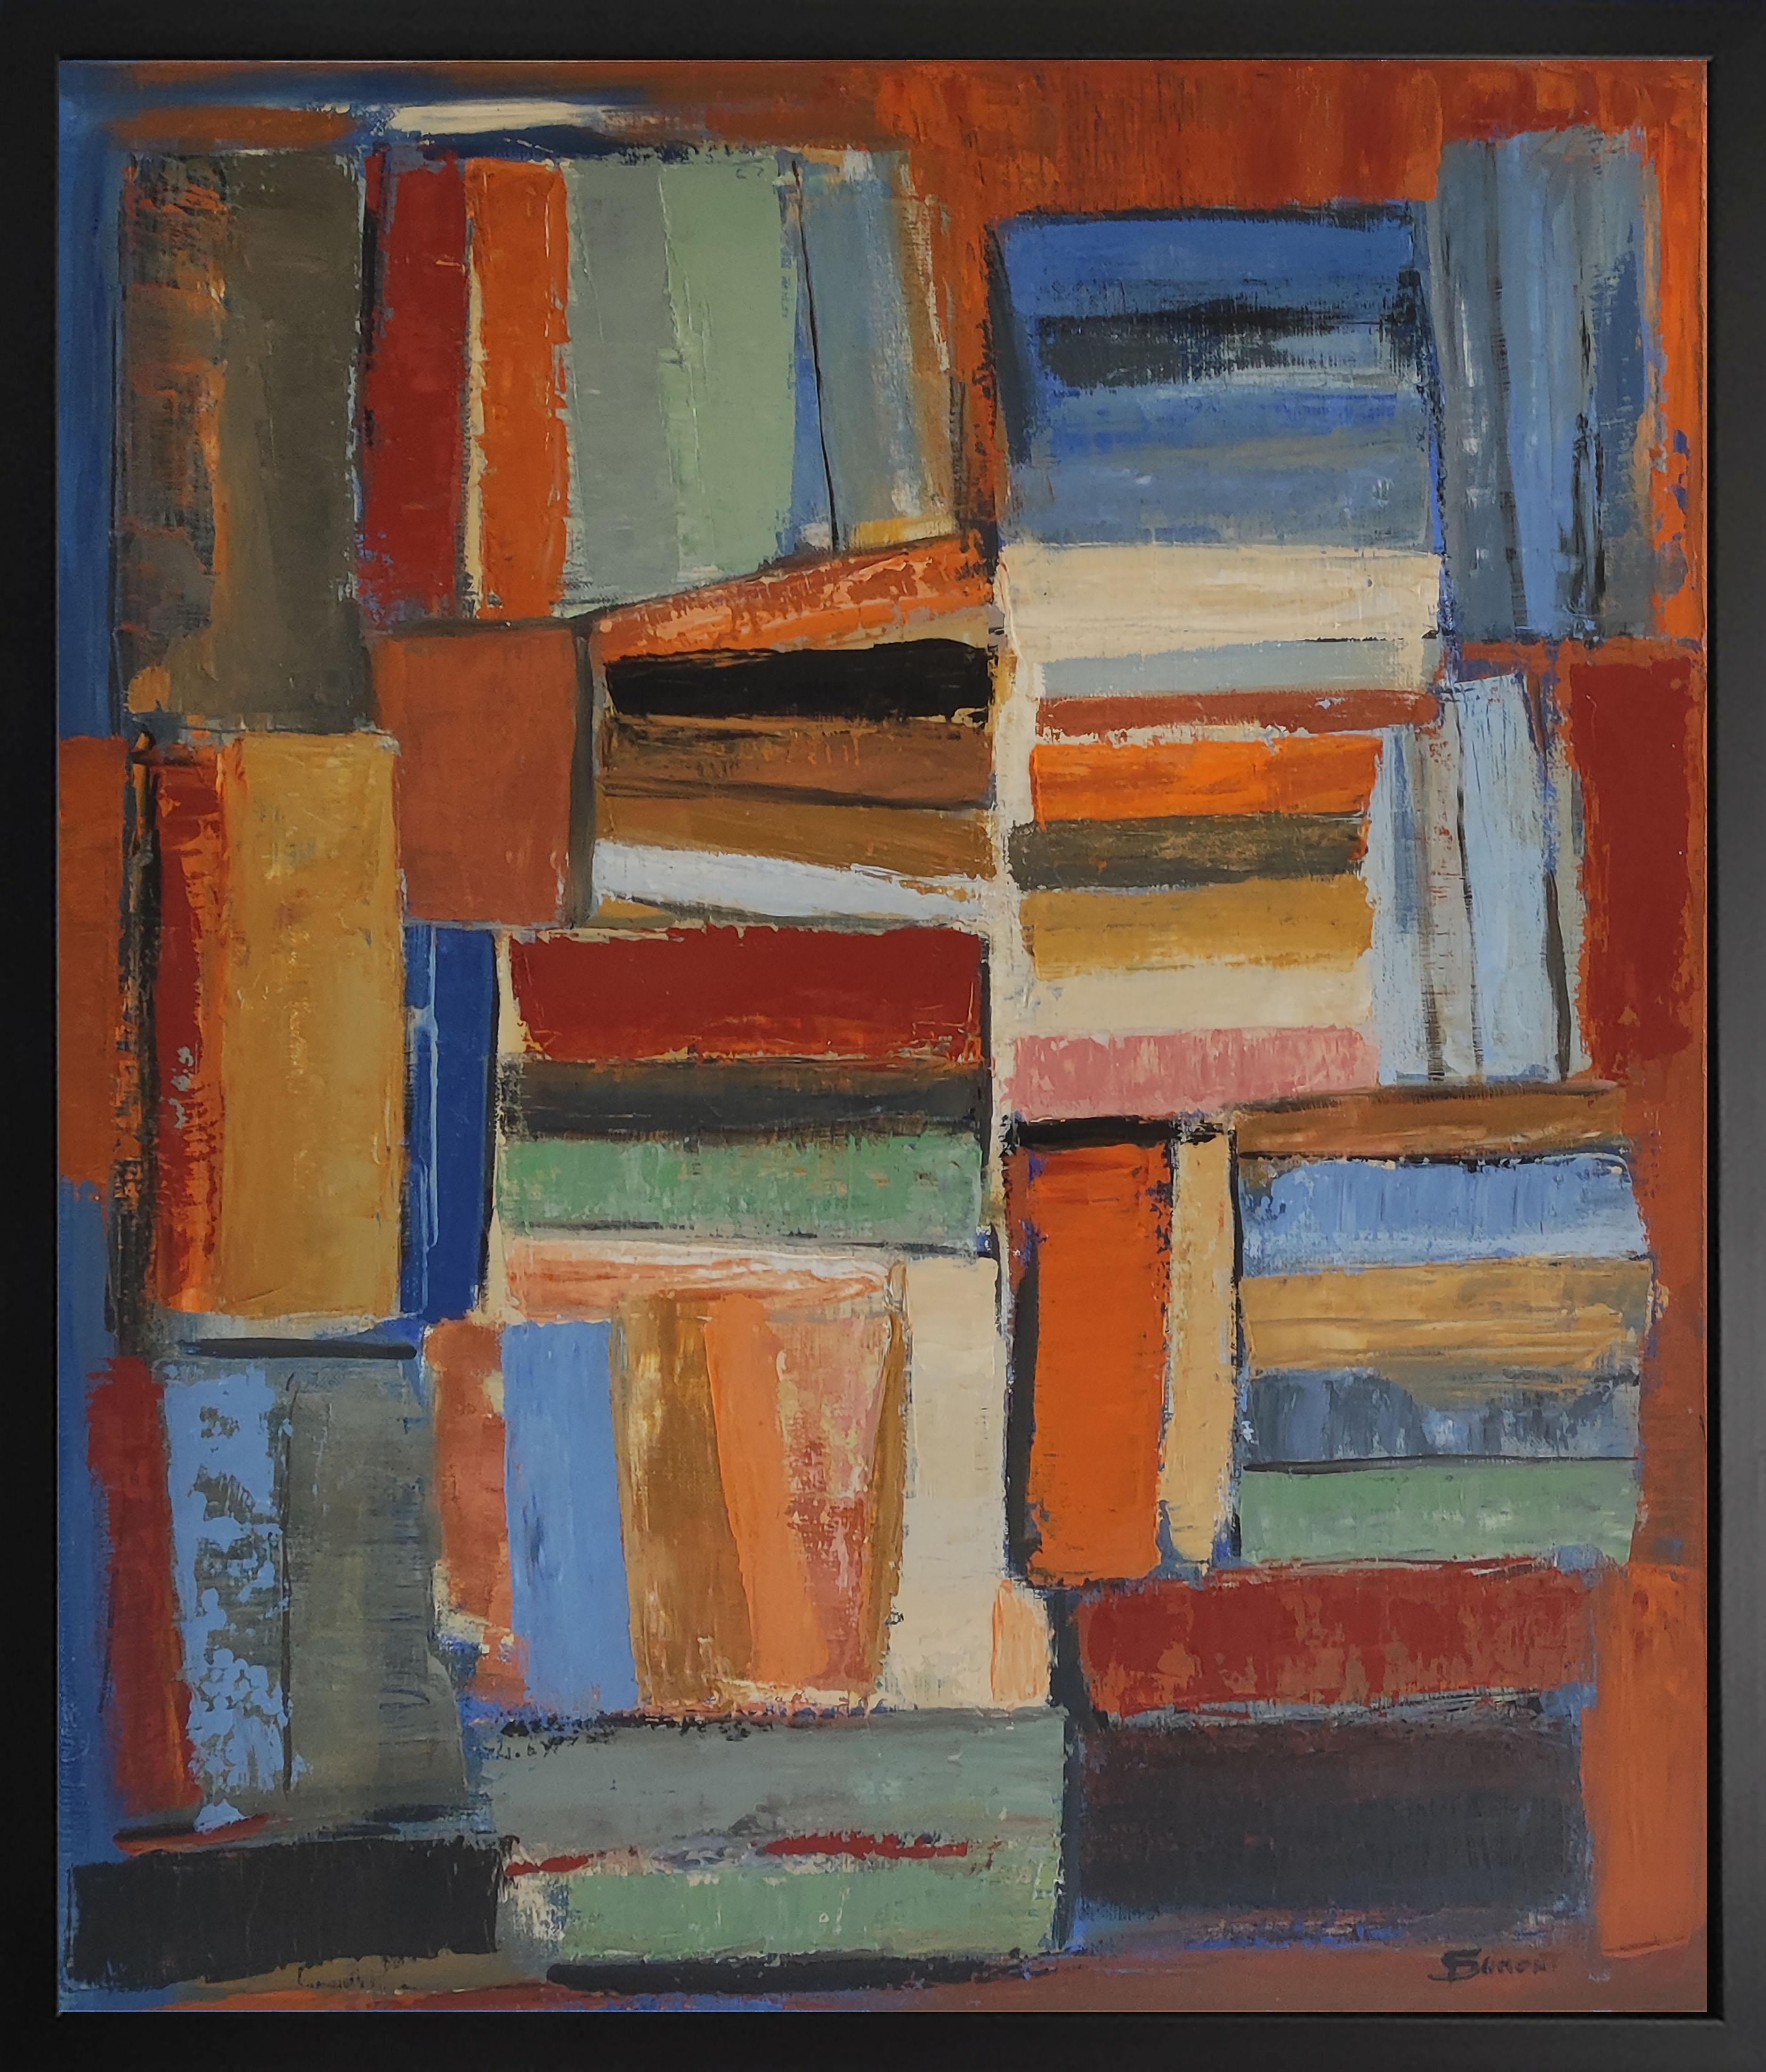 SOPHIE DUMONT Abstract Painting – Harmonie/2, farbig abstrakt, Bücher, Öl auf Leinwand, Expressionismus, geometrisch 